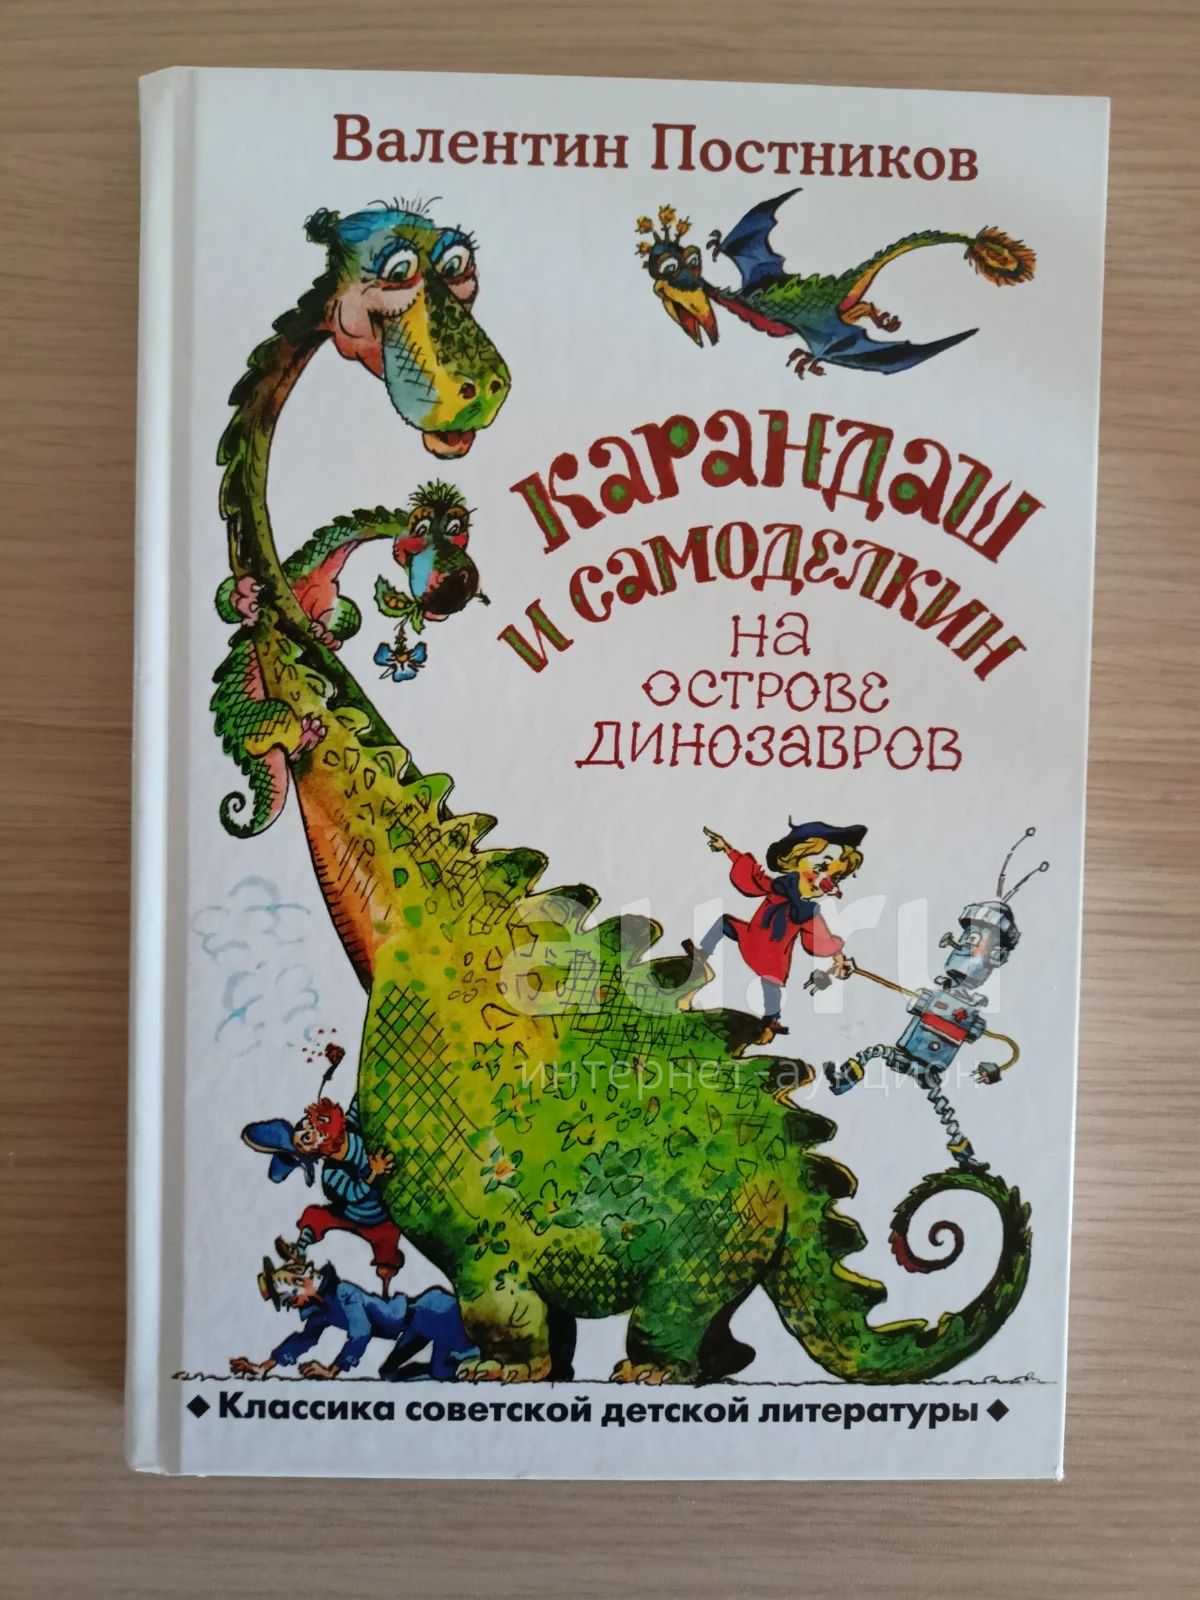 Карандаш и Самоделкин на острове динозавров. Бишкек динозавры.